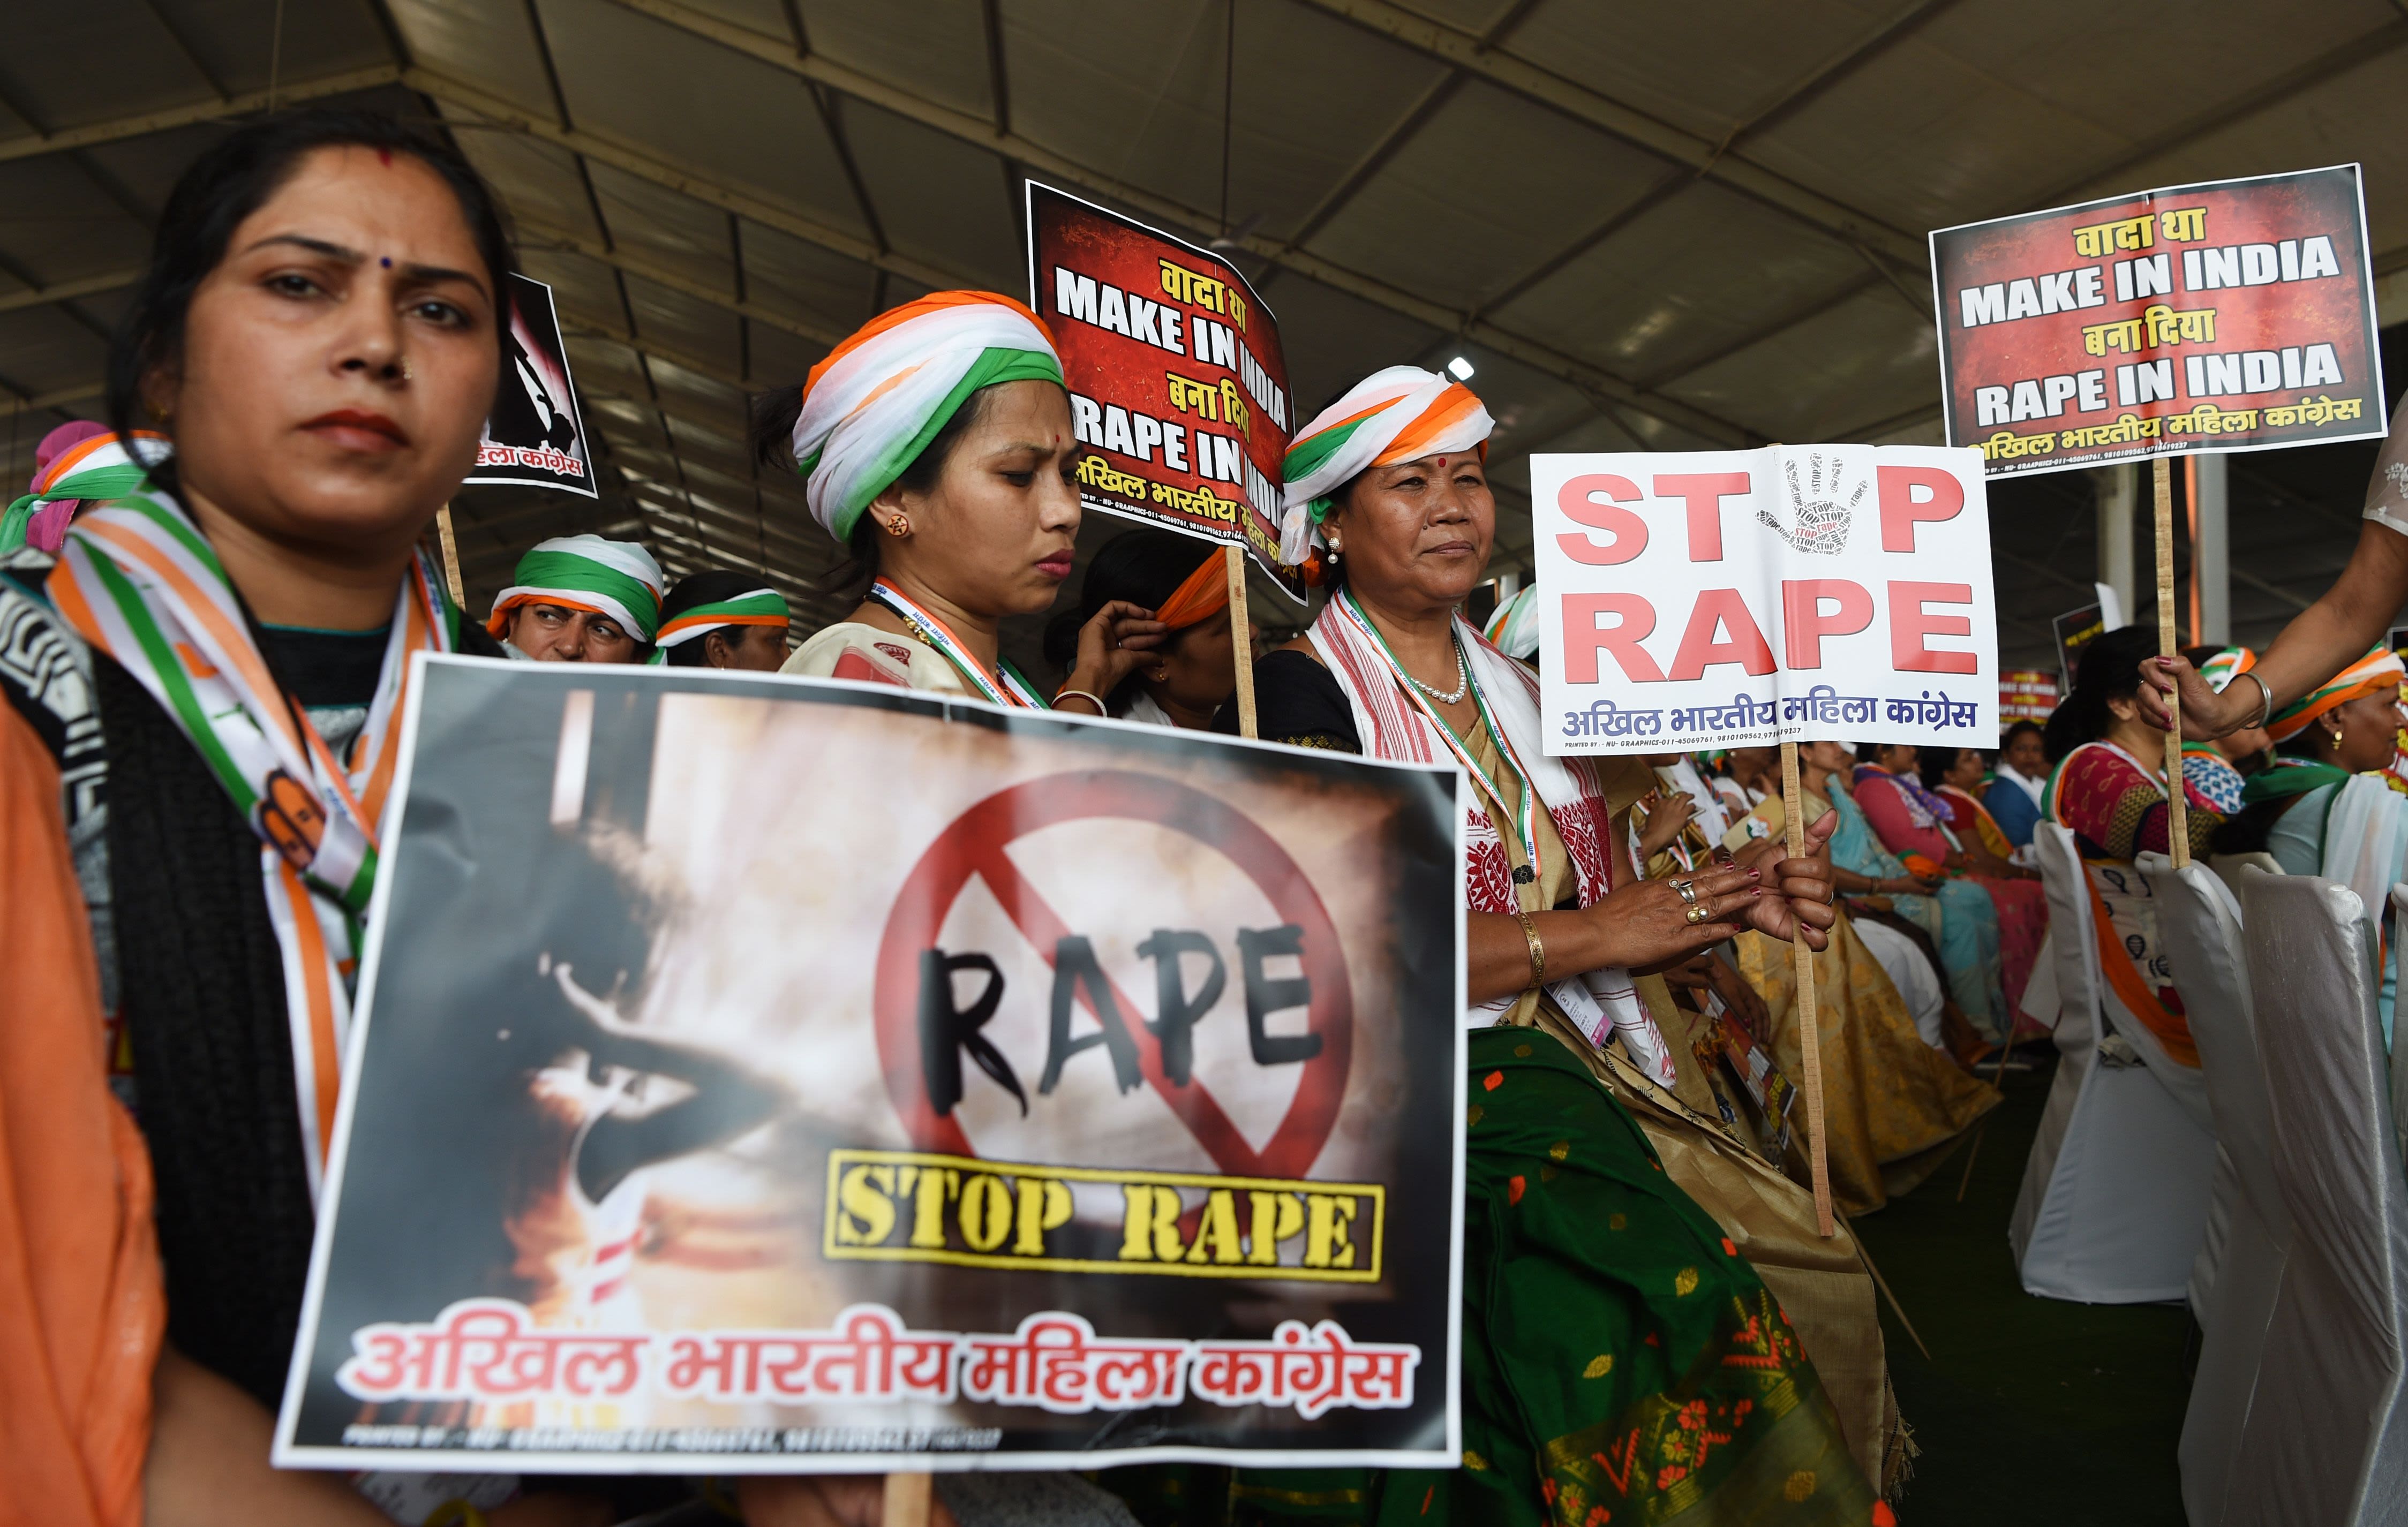 Hindischoolgirlssex - Indian schoolgirls beaten up after confronting boys over lewd drawings | CNN